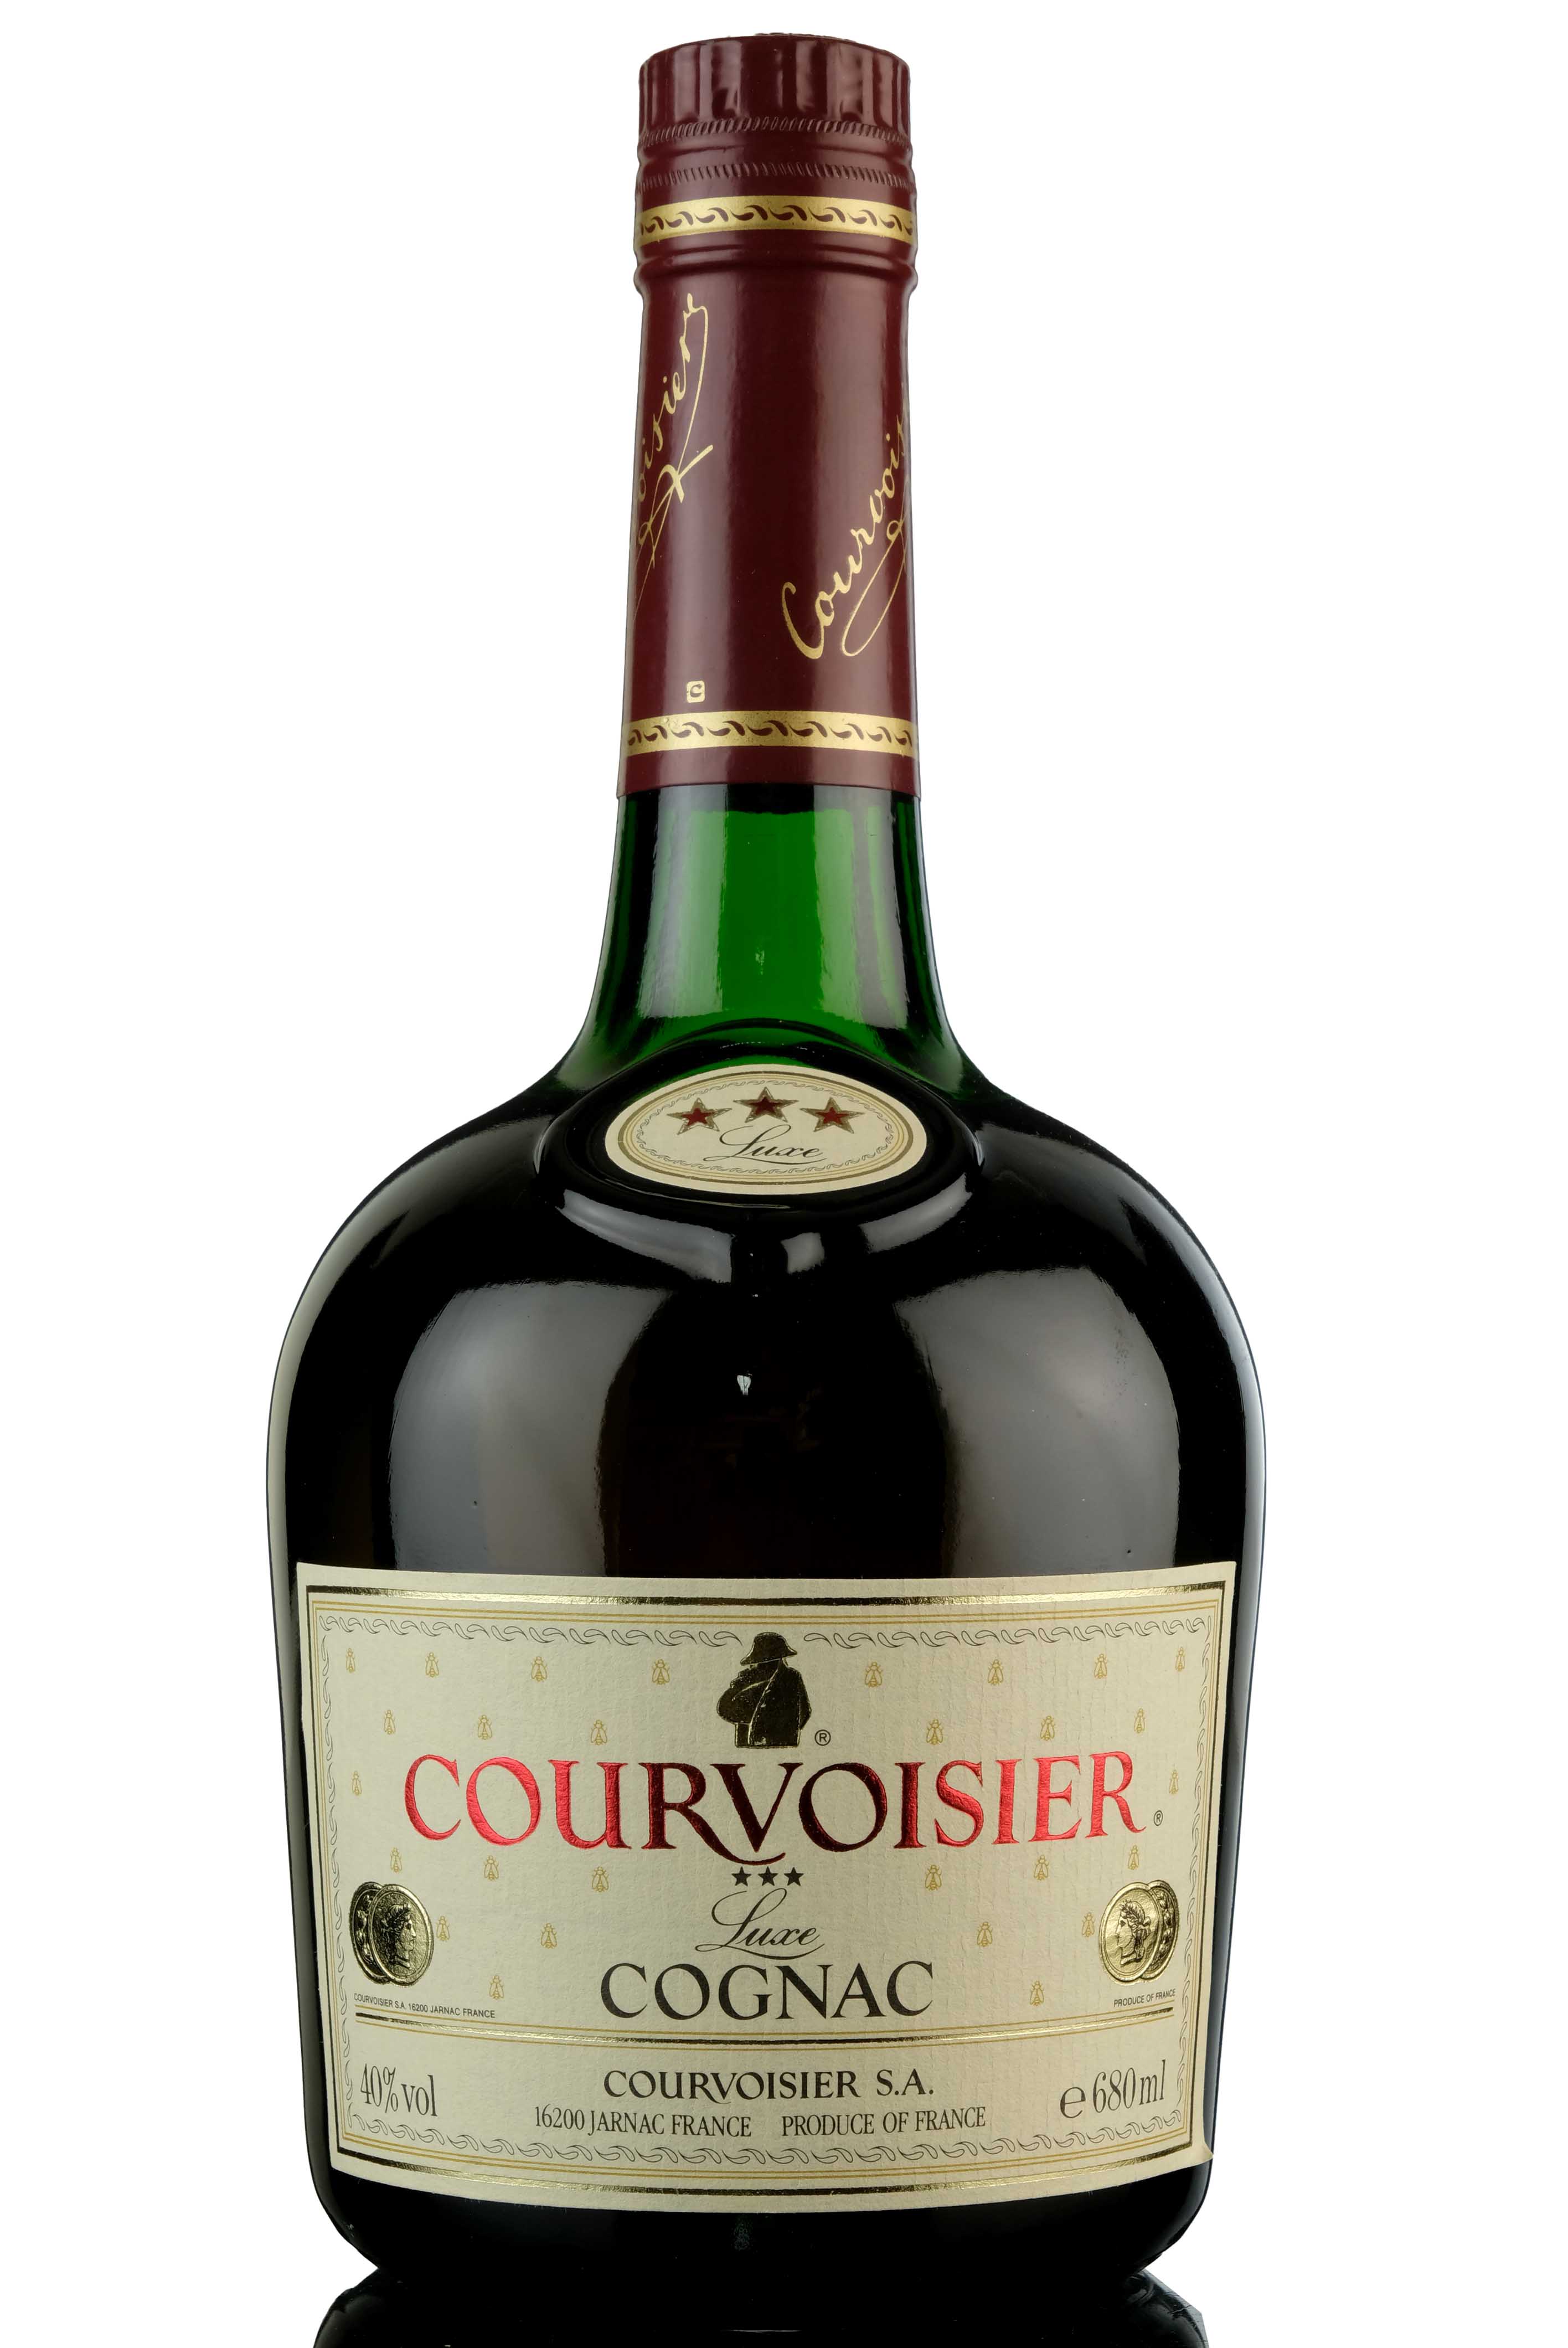 Courvoisier 3 Star Cognac